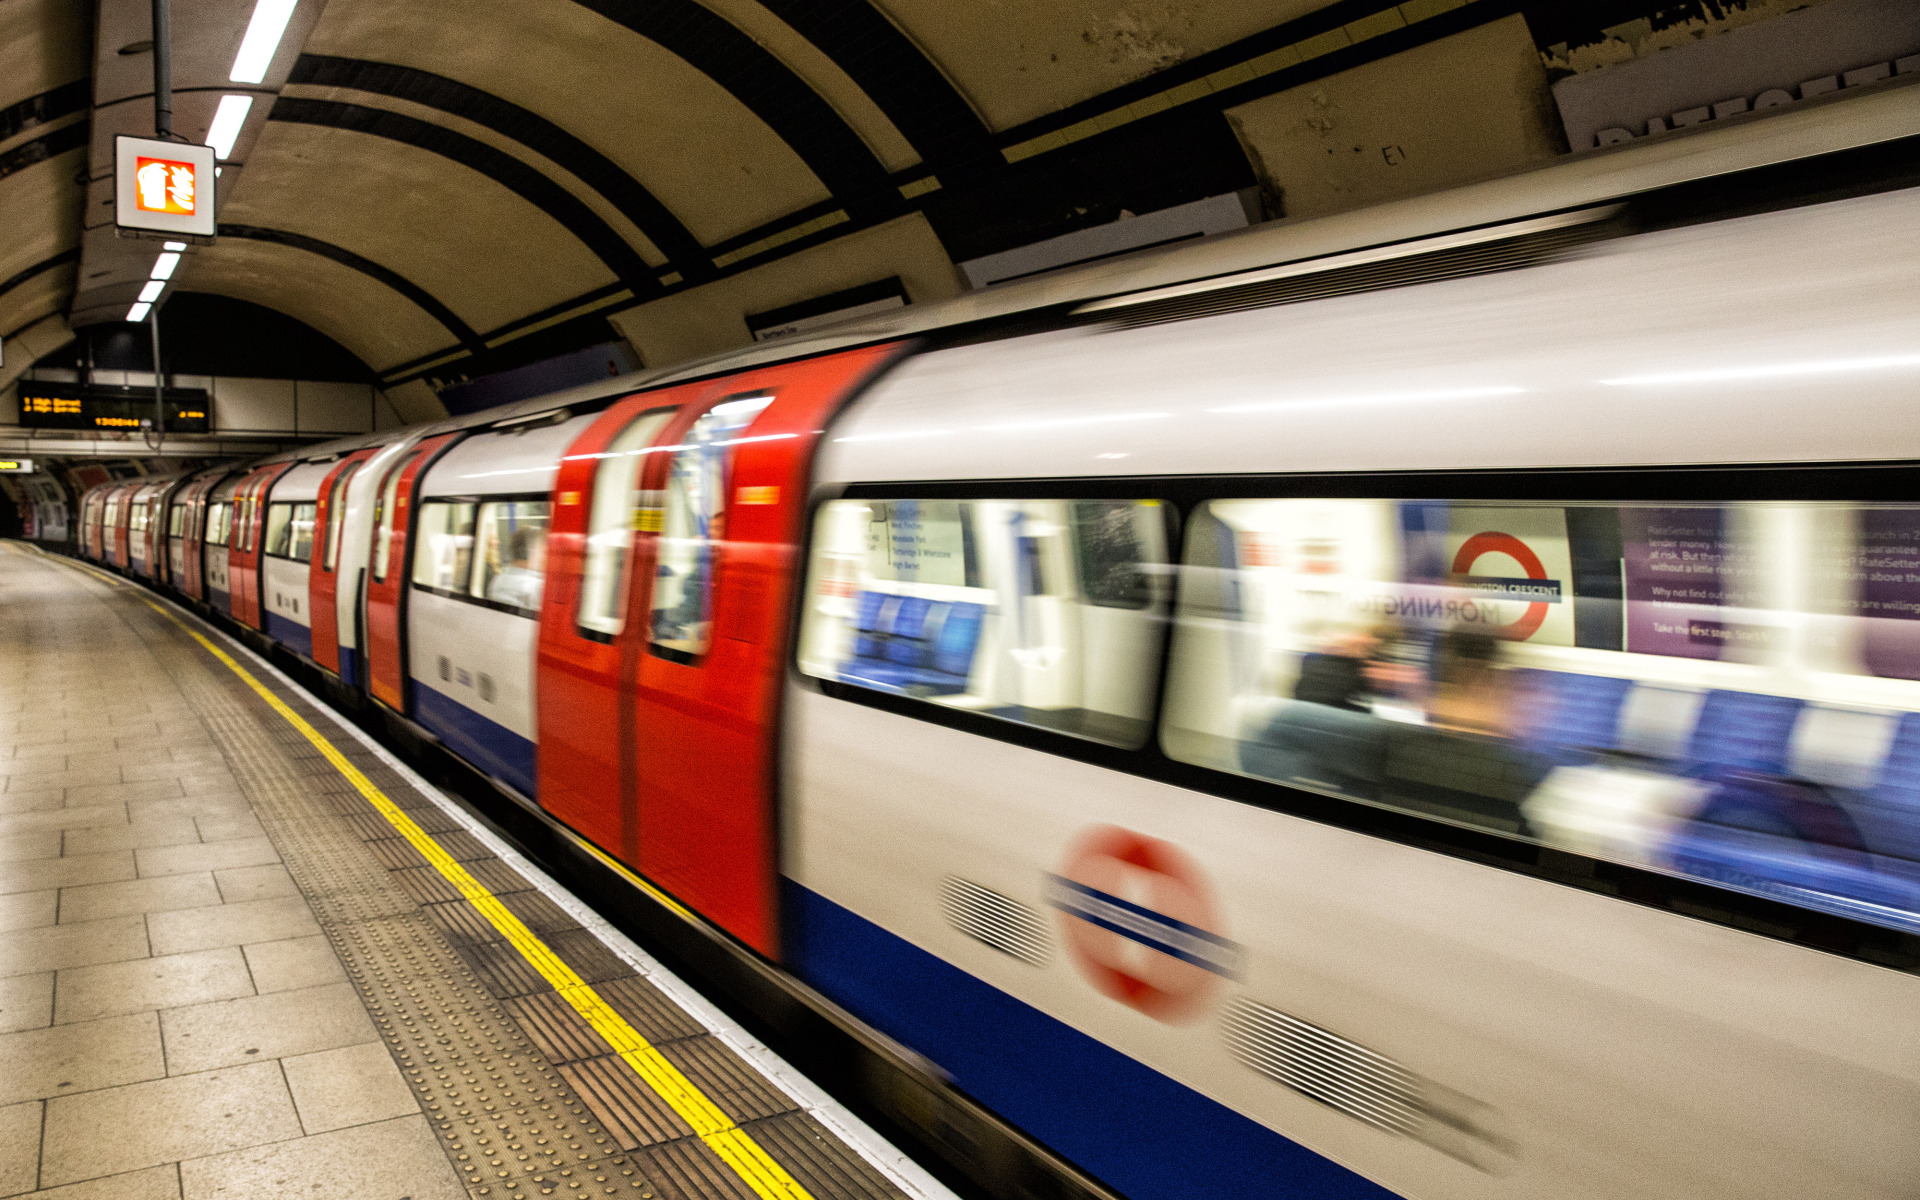 London underground steam фото 75